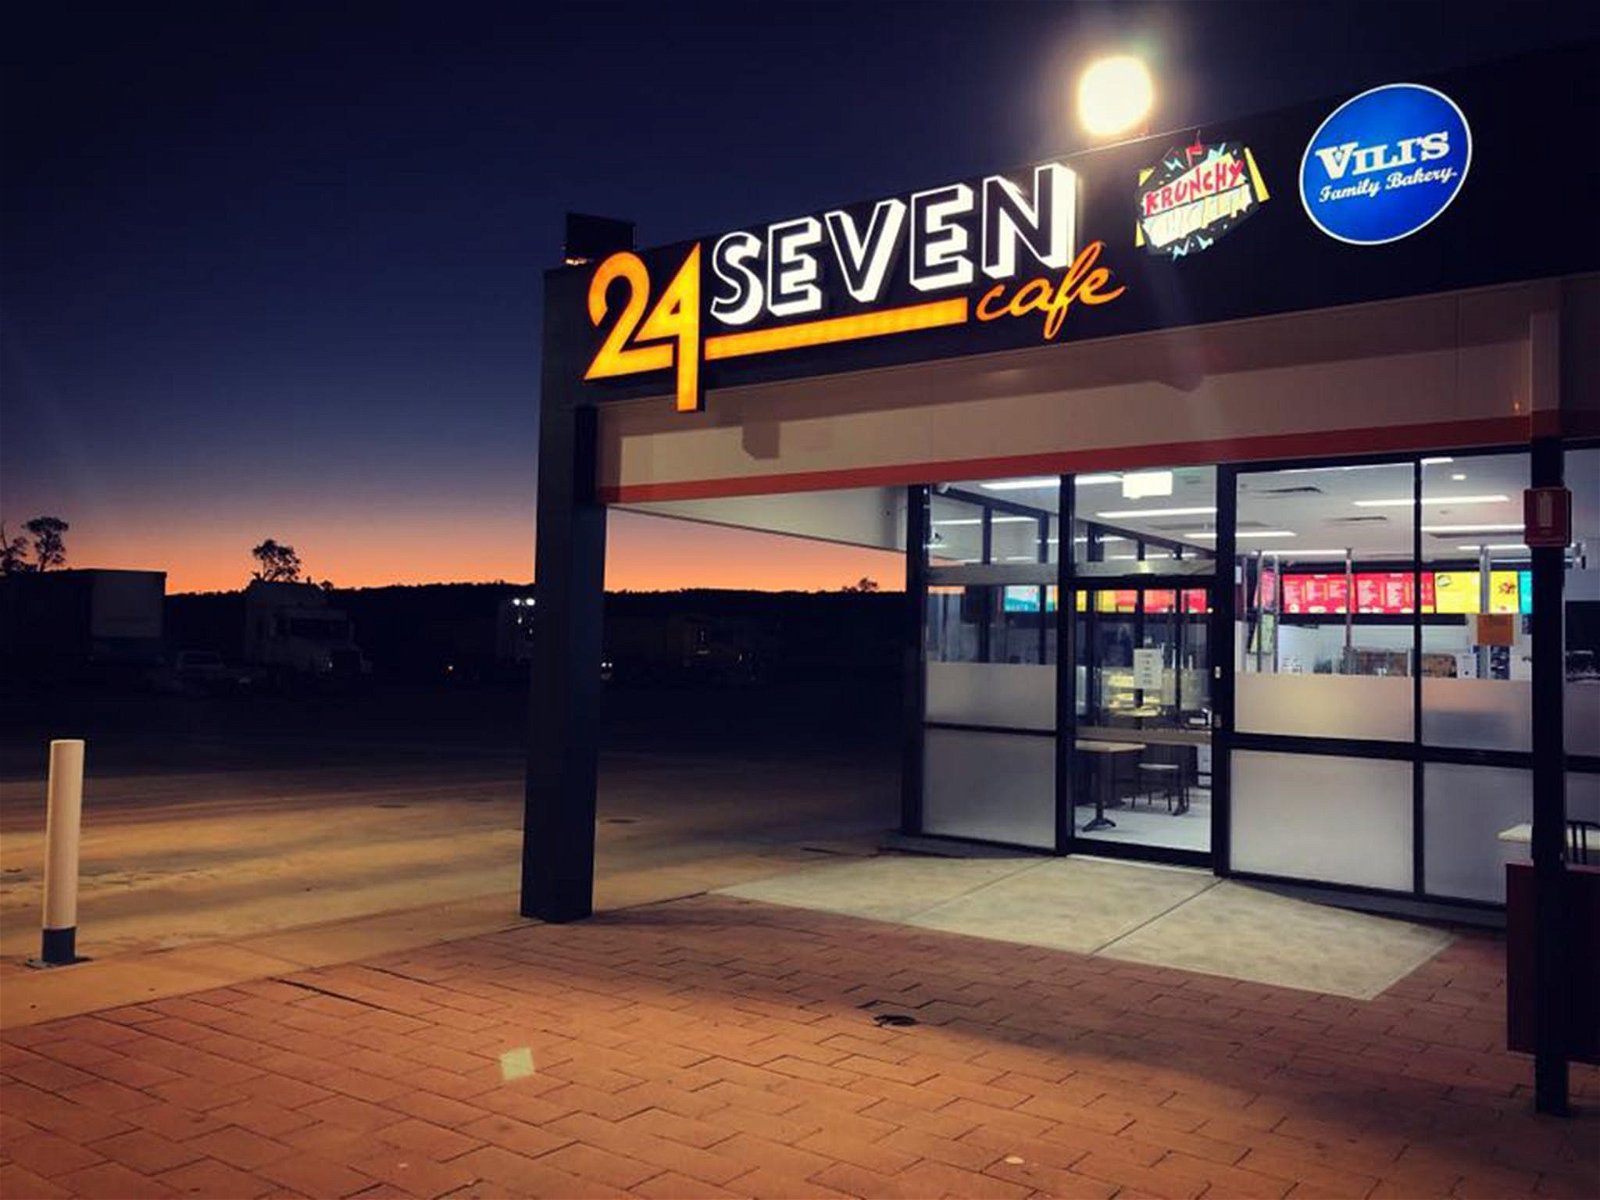 24 Seven Cafe - Food Delivery Shop